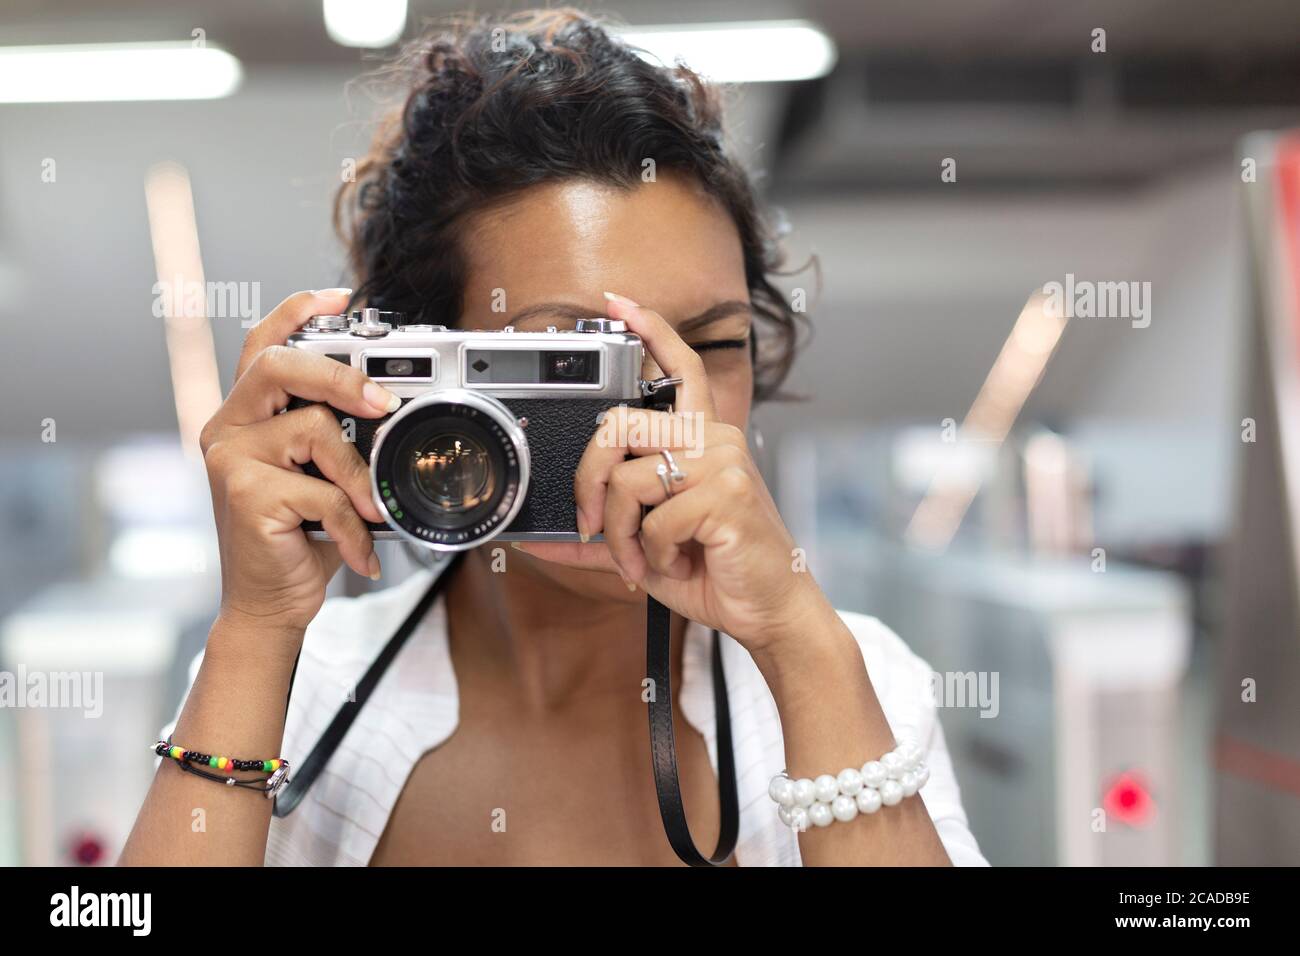 Nahaufnahme einer Frau mit exotischen Funktionen, die mit einer analogen Filmkamera fotografiert. Selektiver Fokus. Konzept von Reisen und Tourismus. Stockfoto